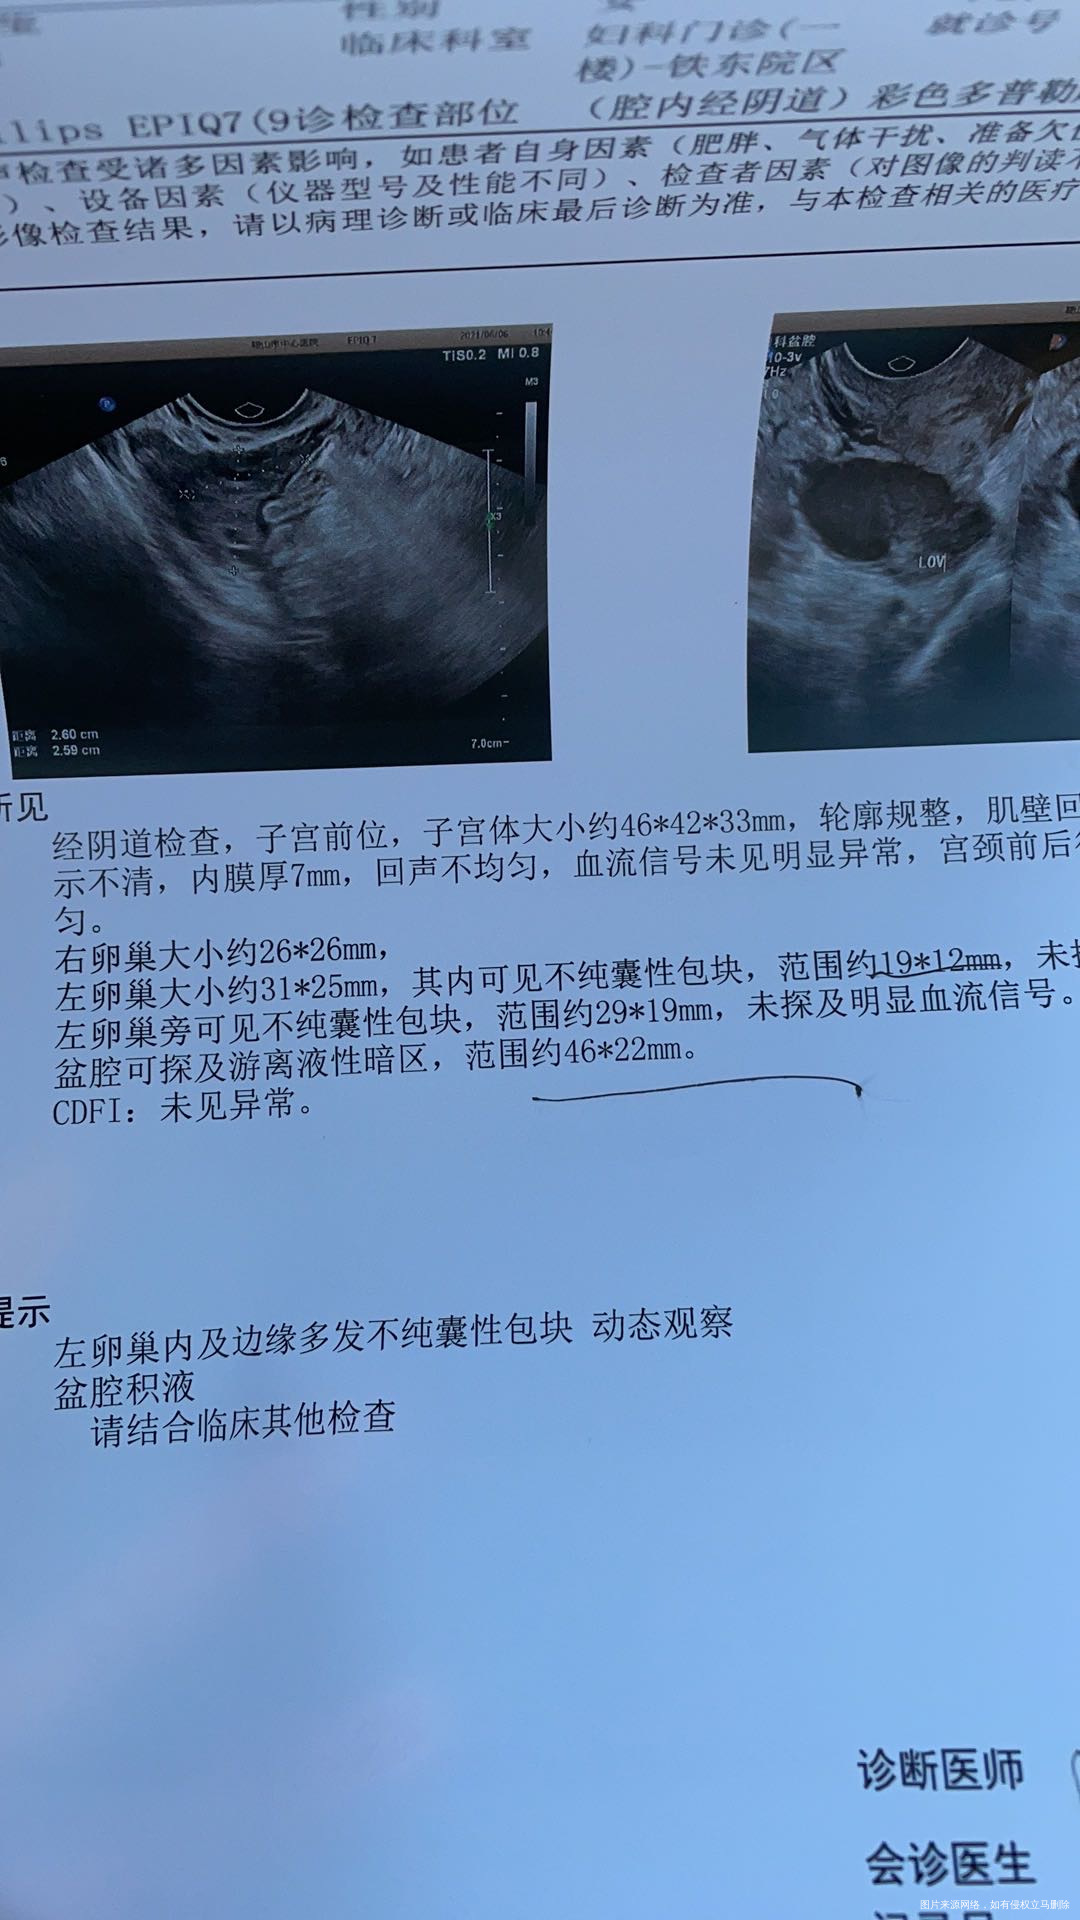 怀孕空囊4月22日做了手术4月30号复查彩超